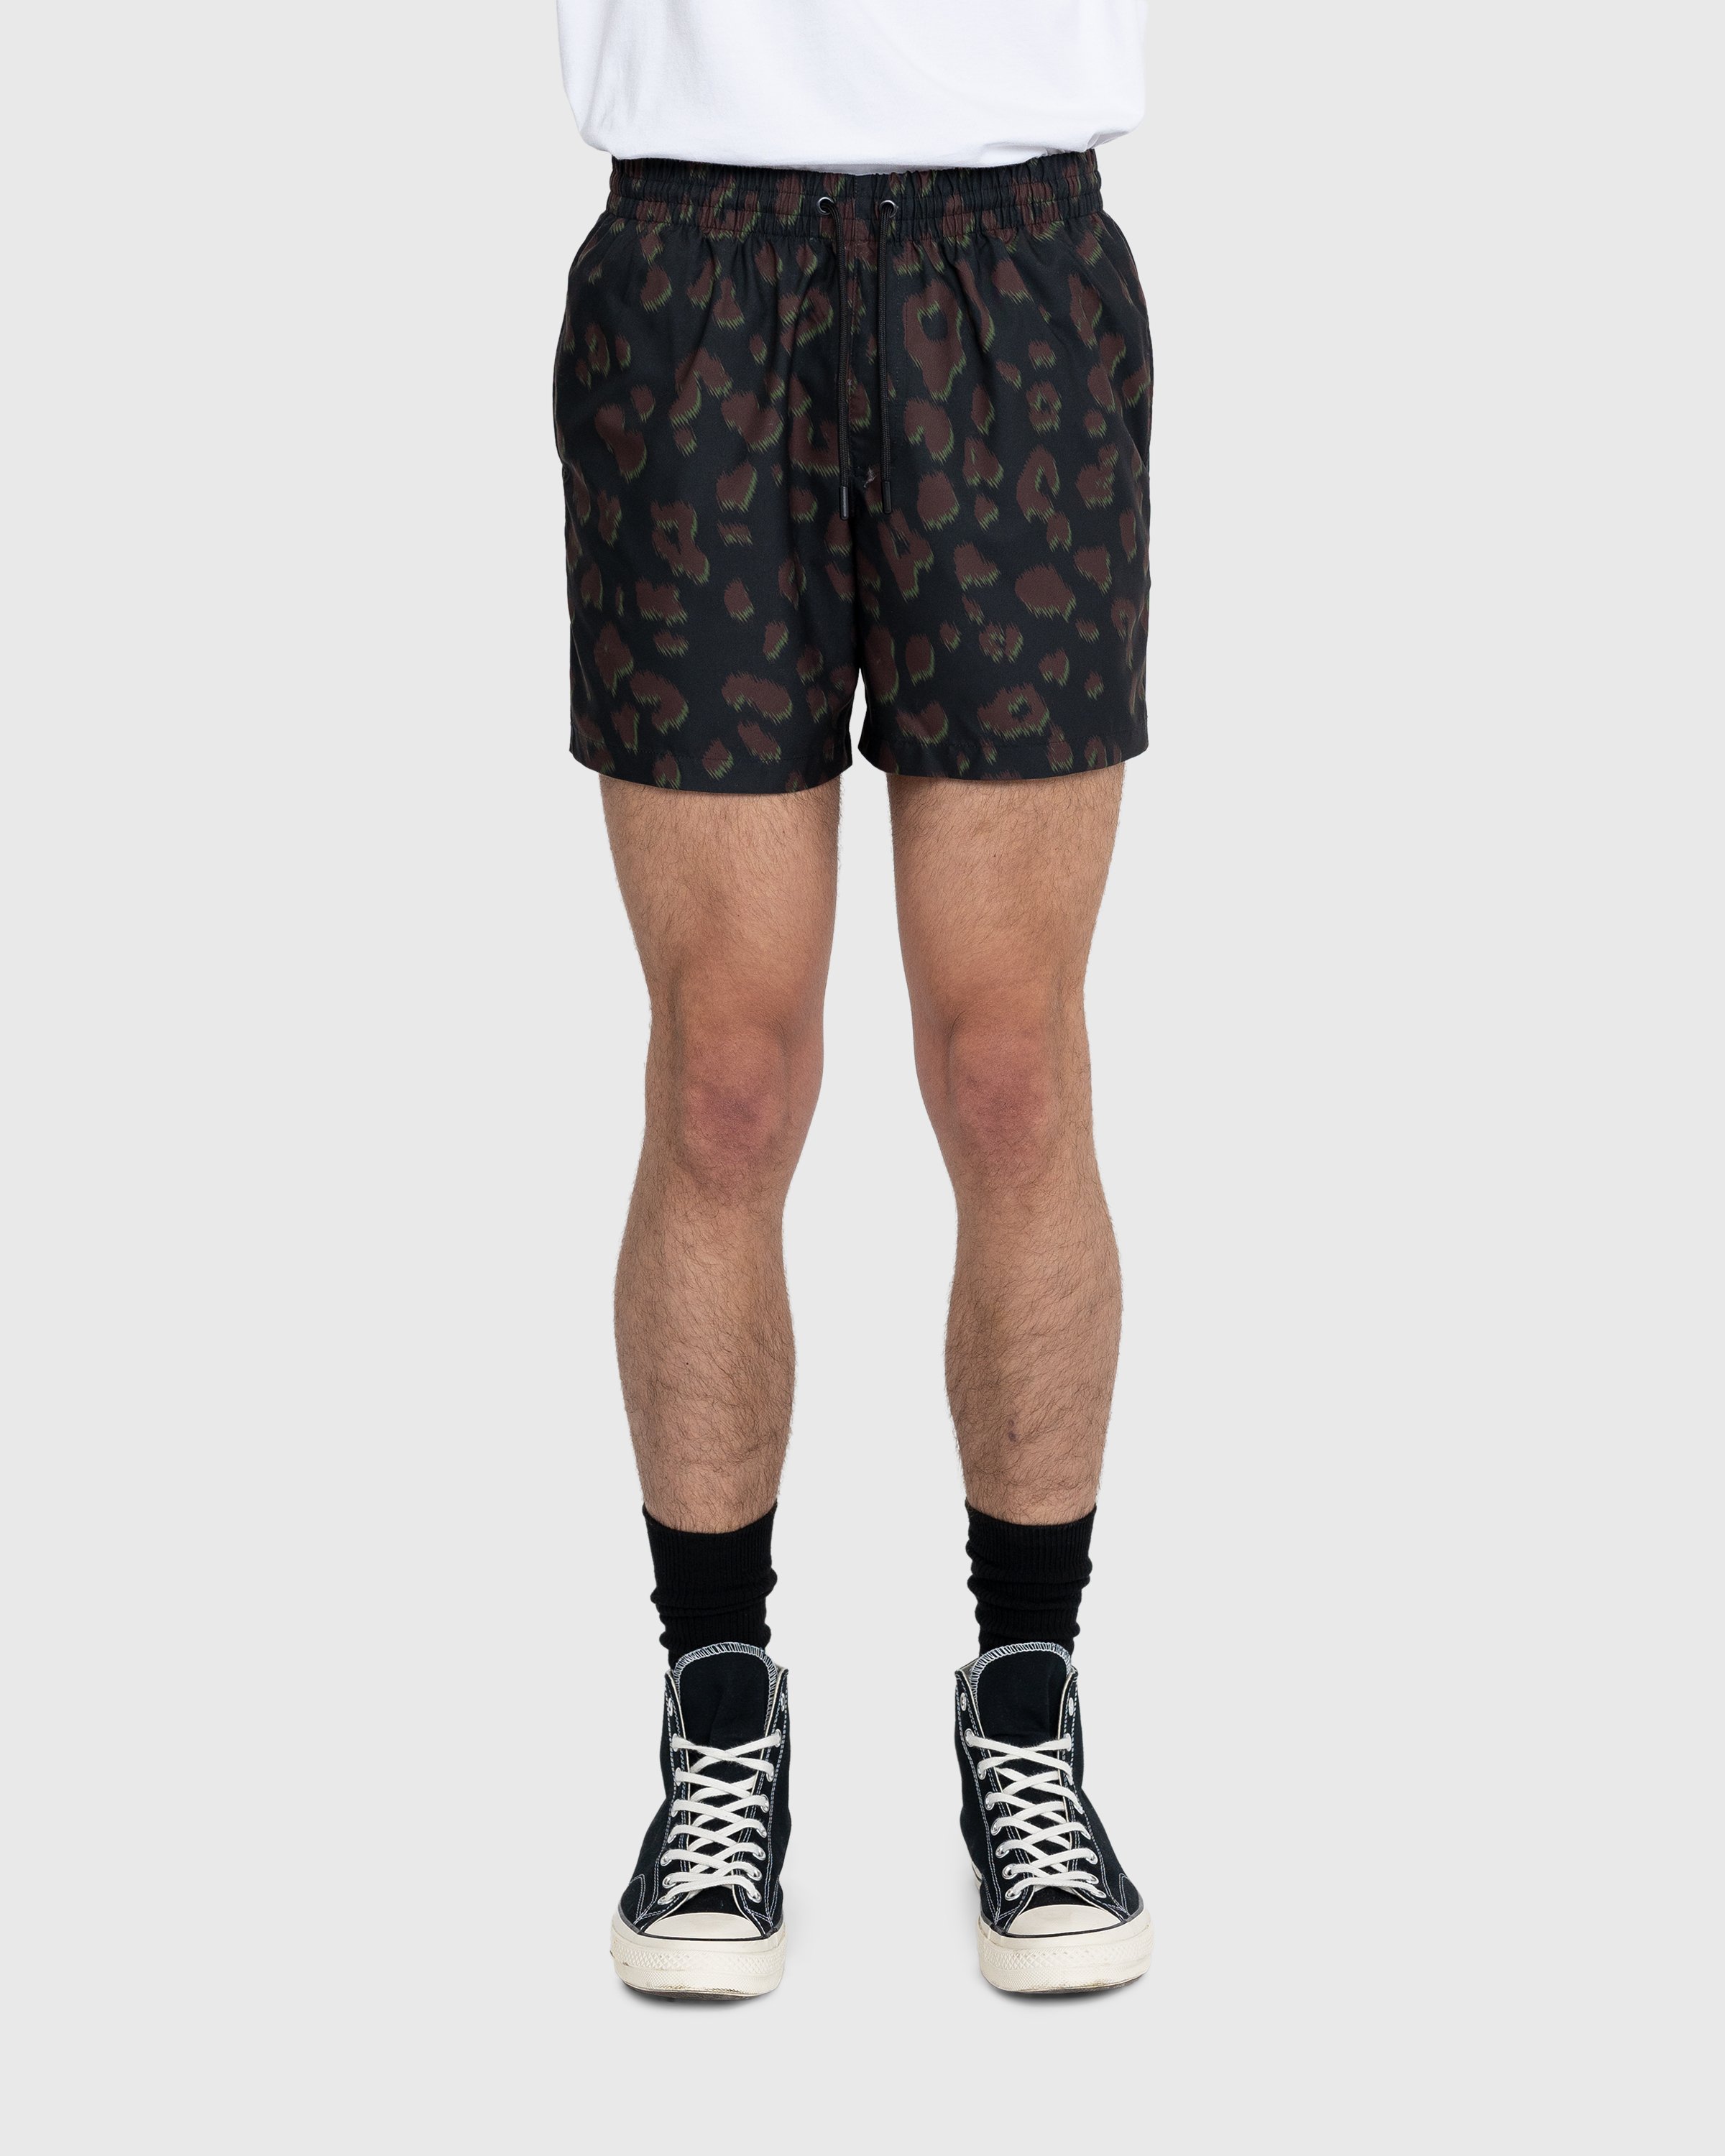 Dries van Noten - Phibbs Shorts - Clothing - Black - Image 2